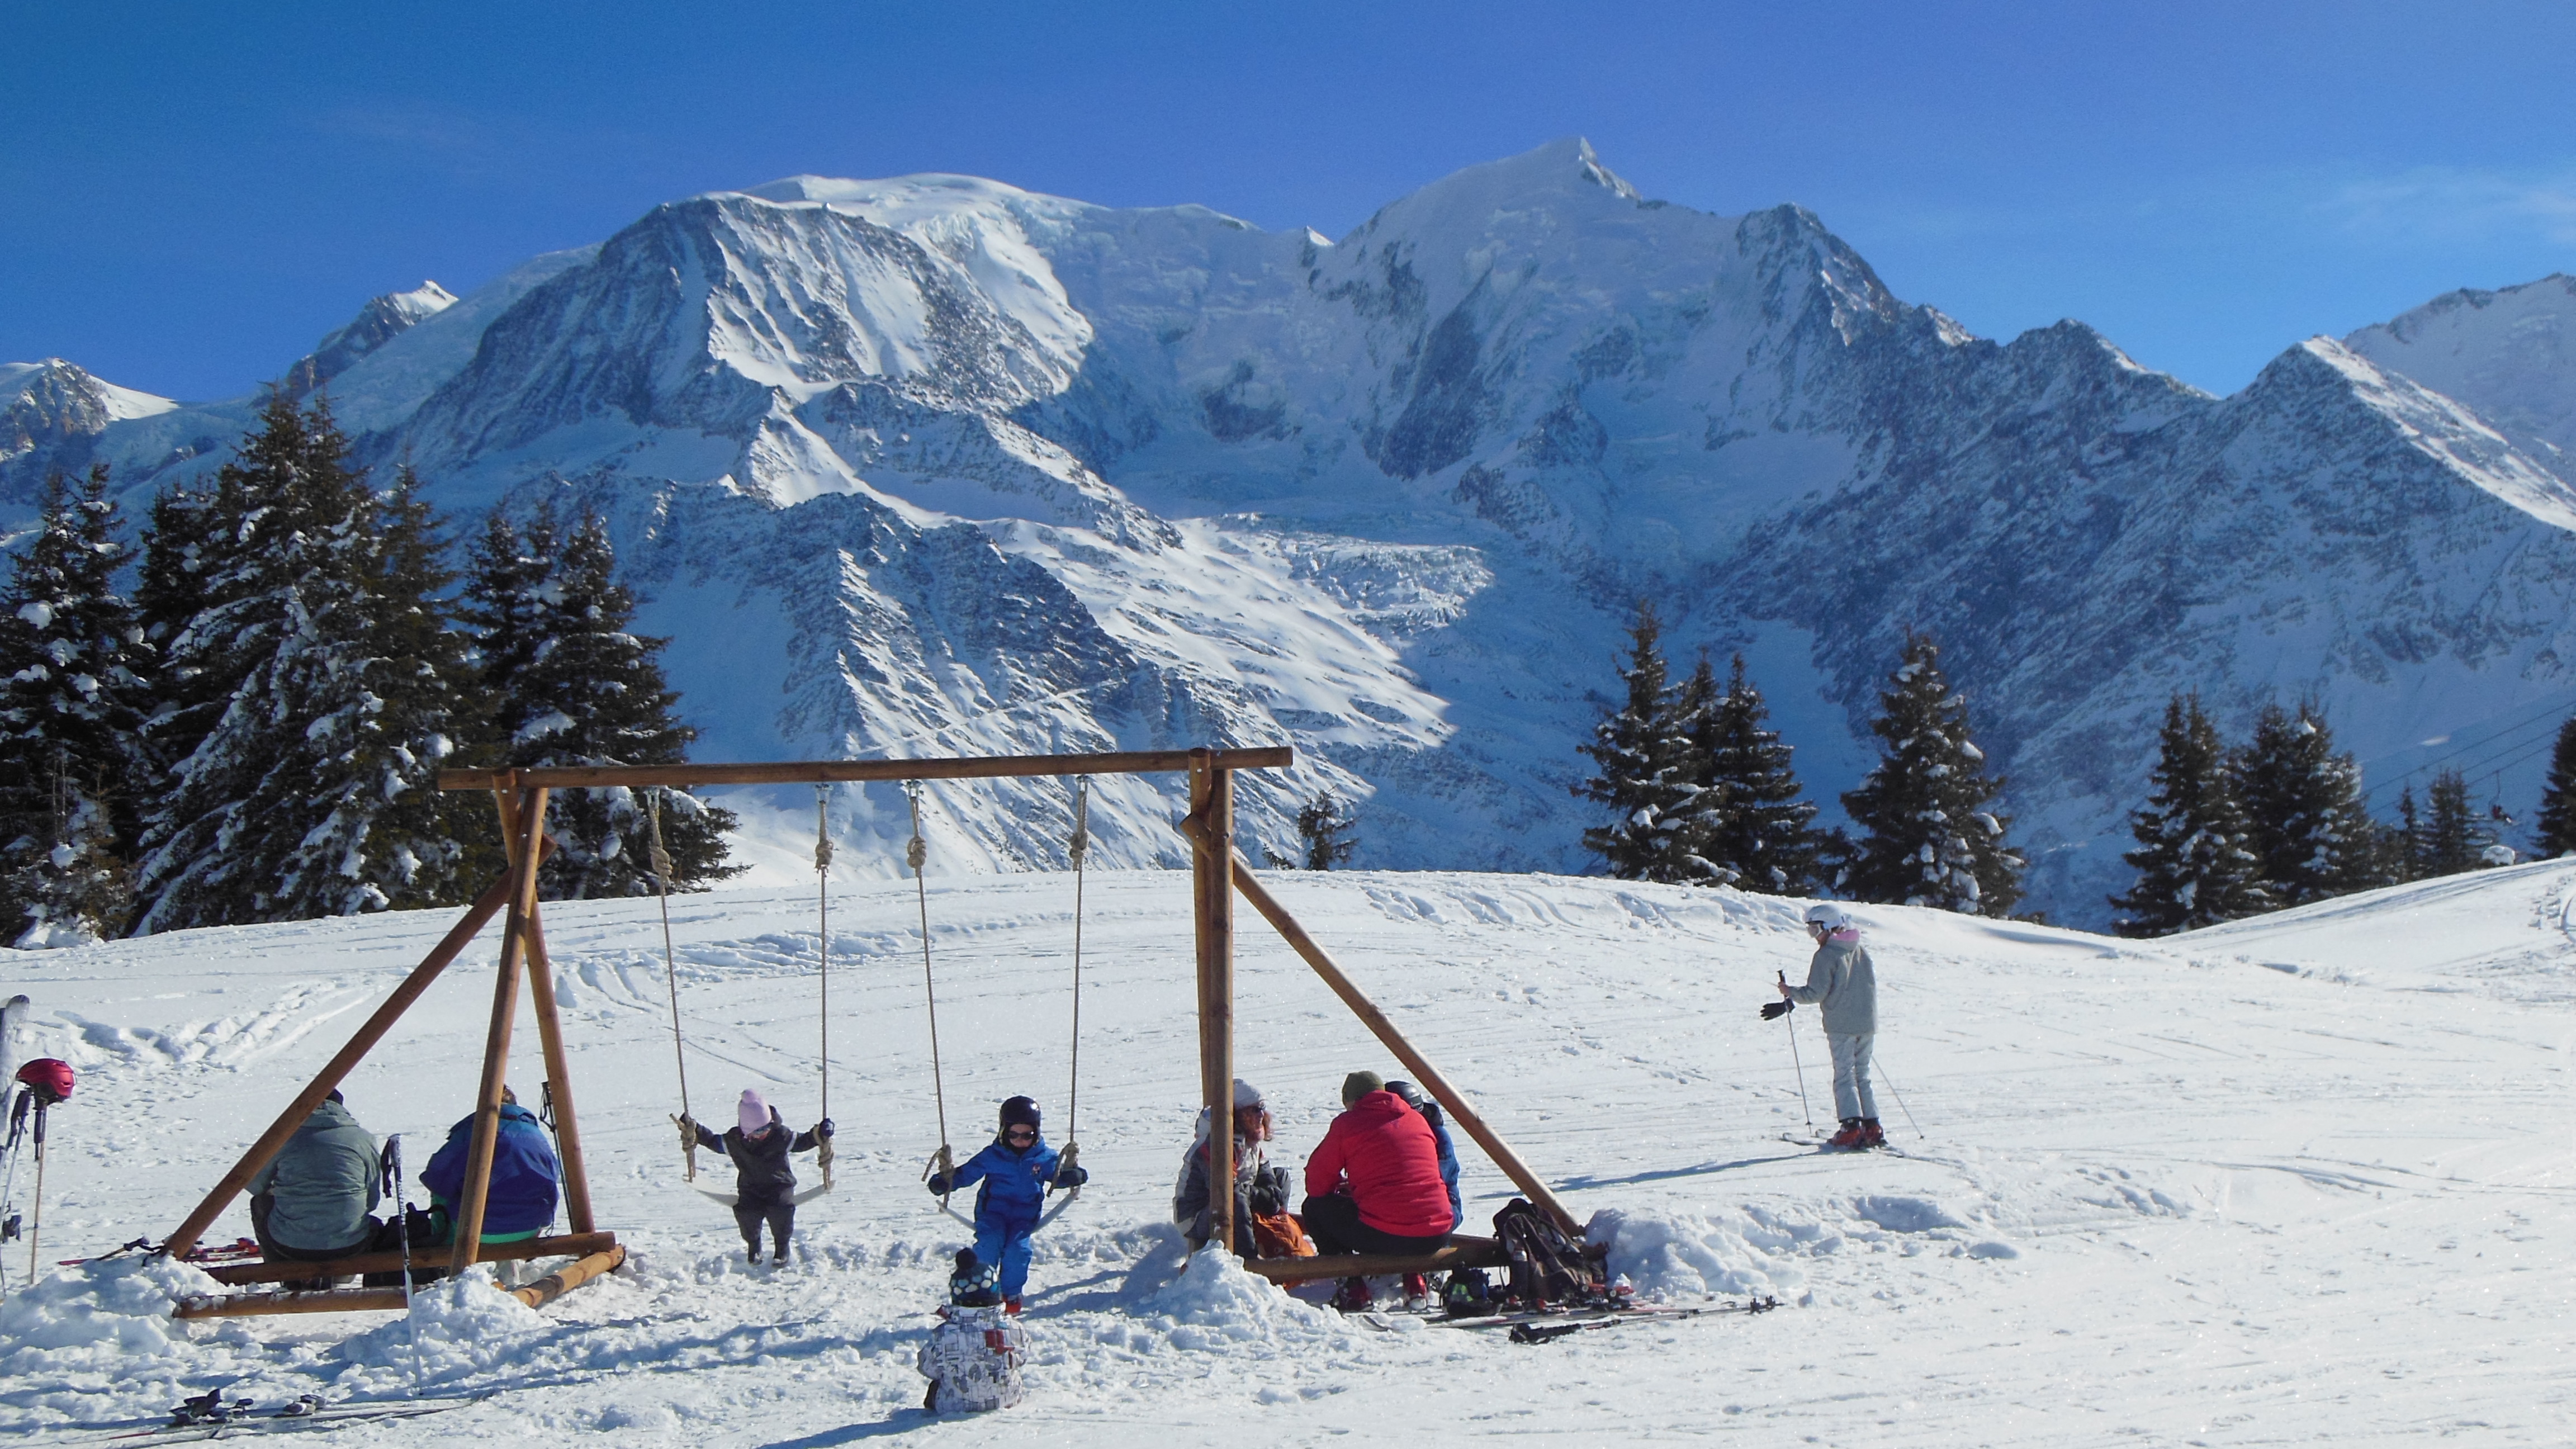 Domaine-Skiable-Les-Houches-OT_Chamonix-Mont-Blanc_AK-18437